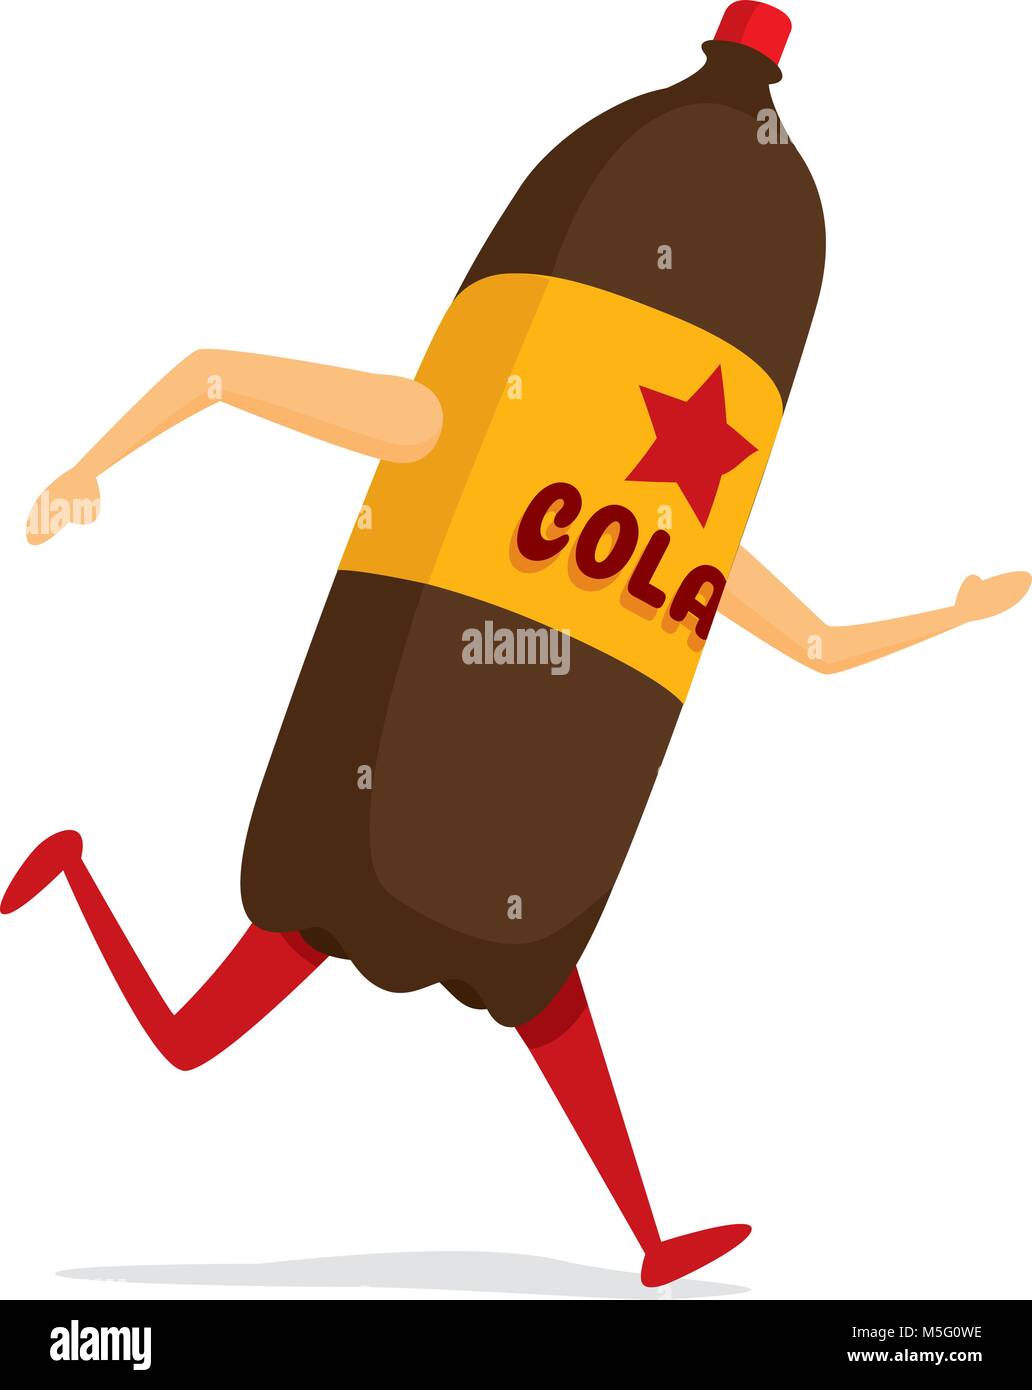 Cartoon illustration of cola soda bottle running fast Stock Vector